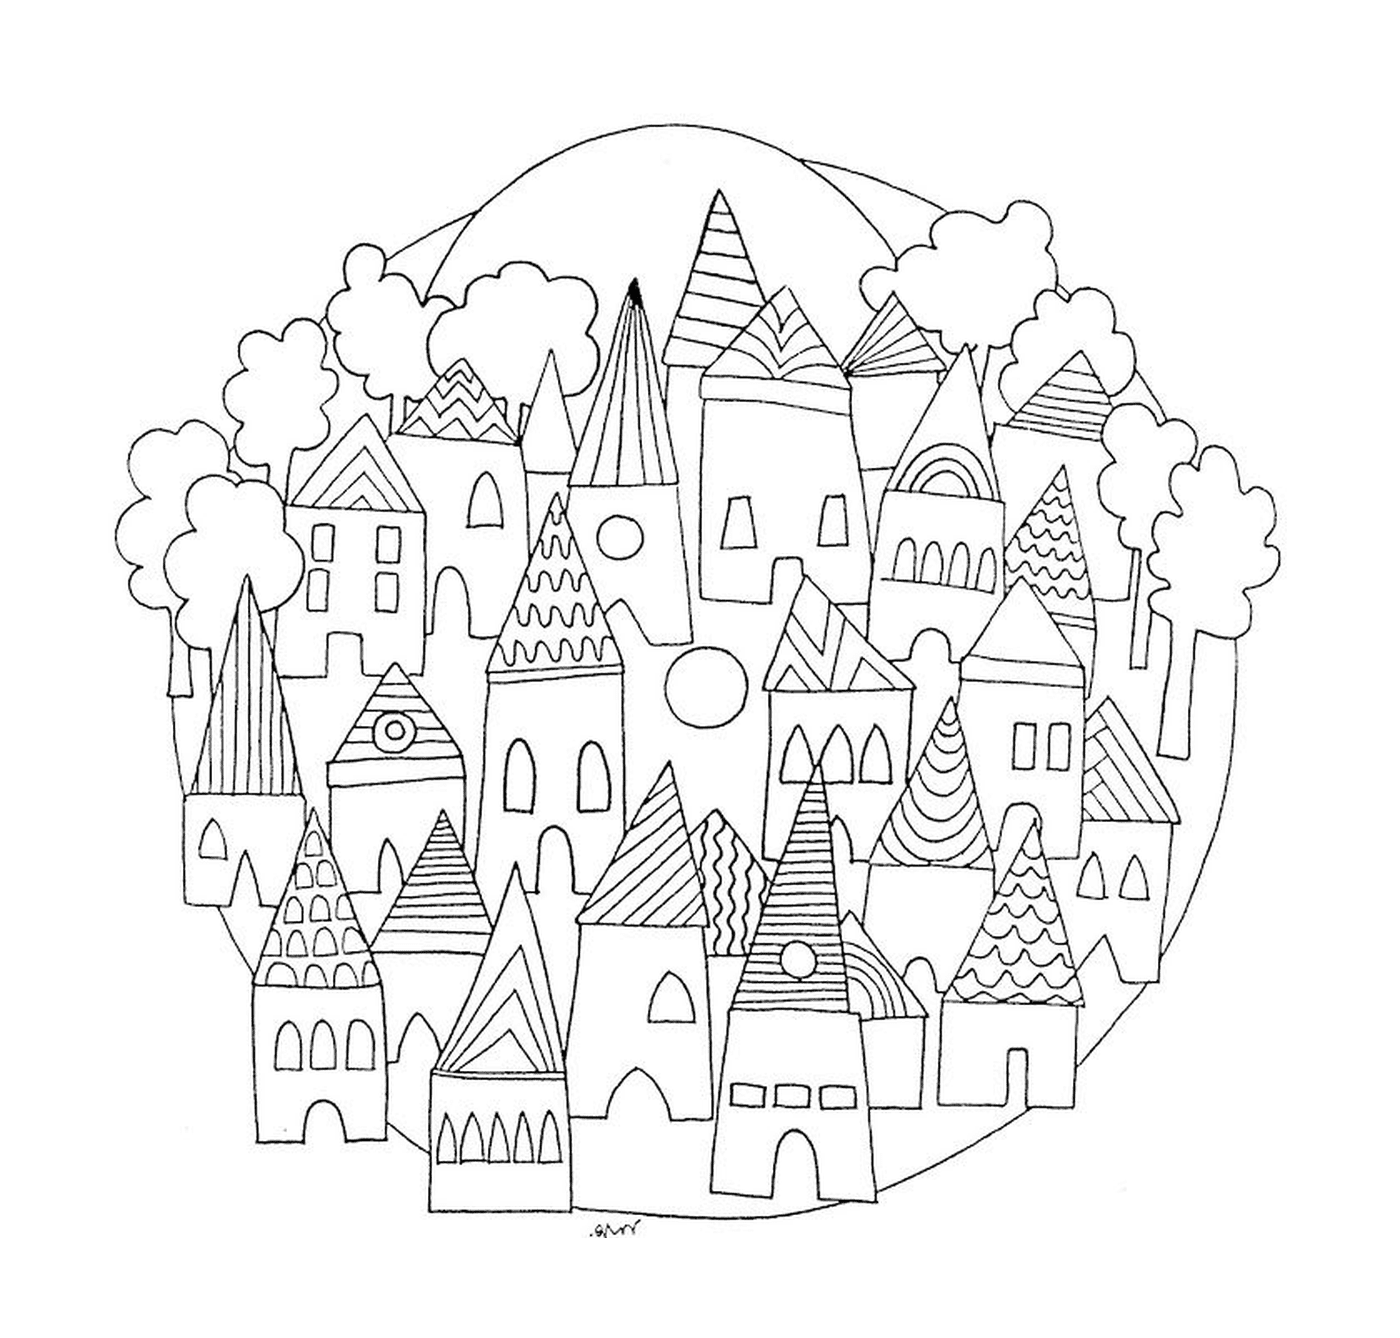  Mandala da cidade com muitas casas 